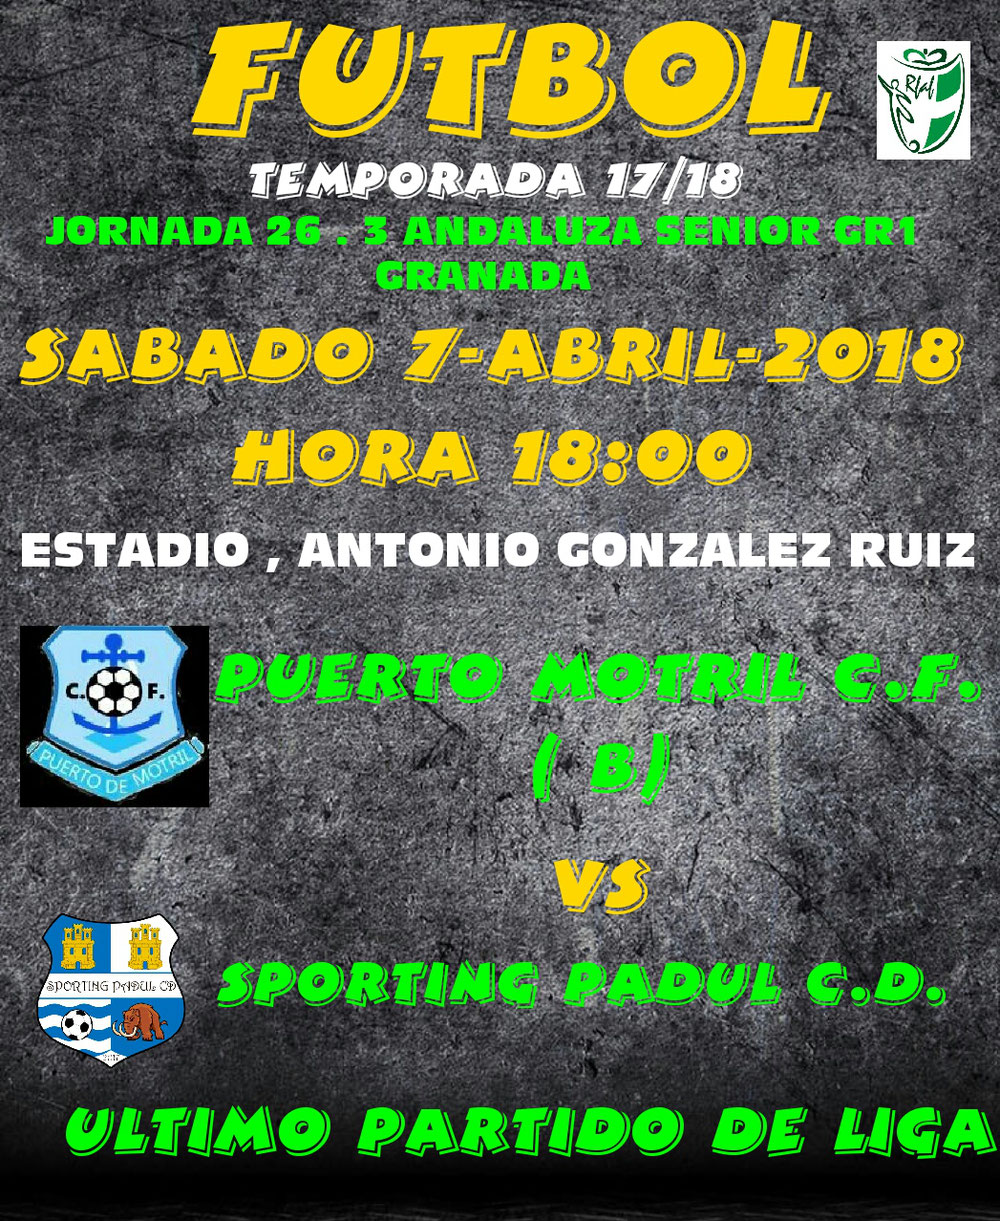 Puerto Motril CF ( b ) vs Sporting Padul CD 